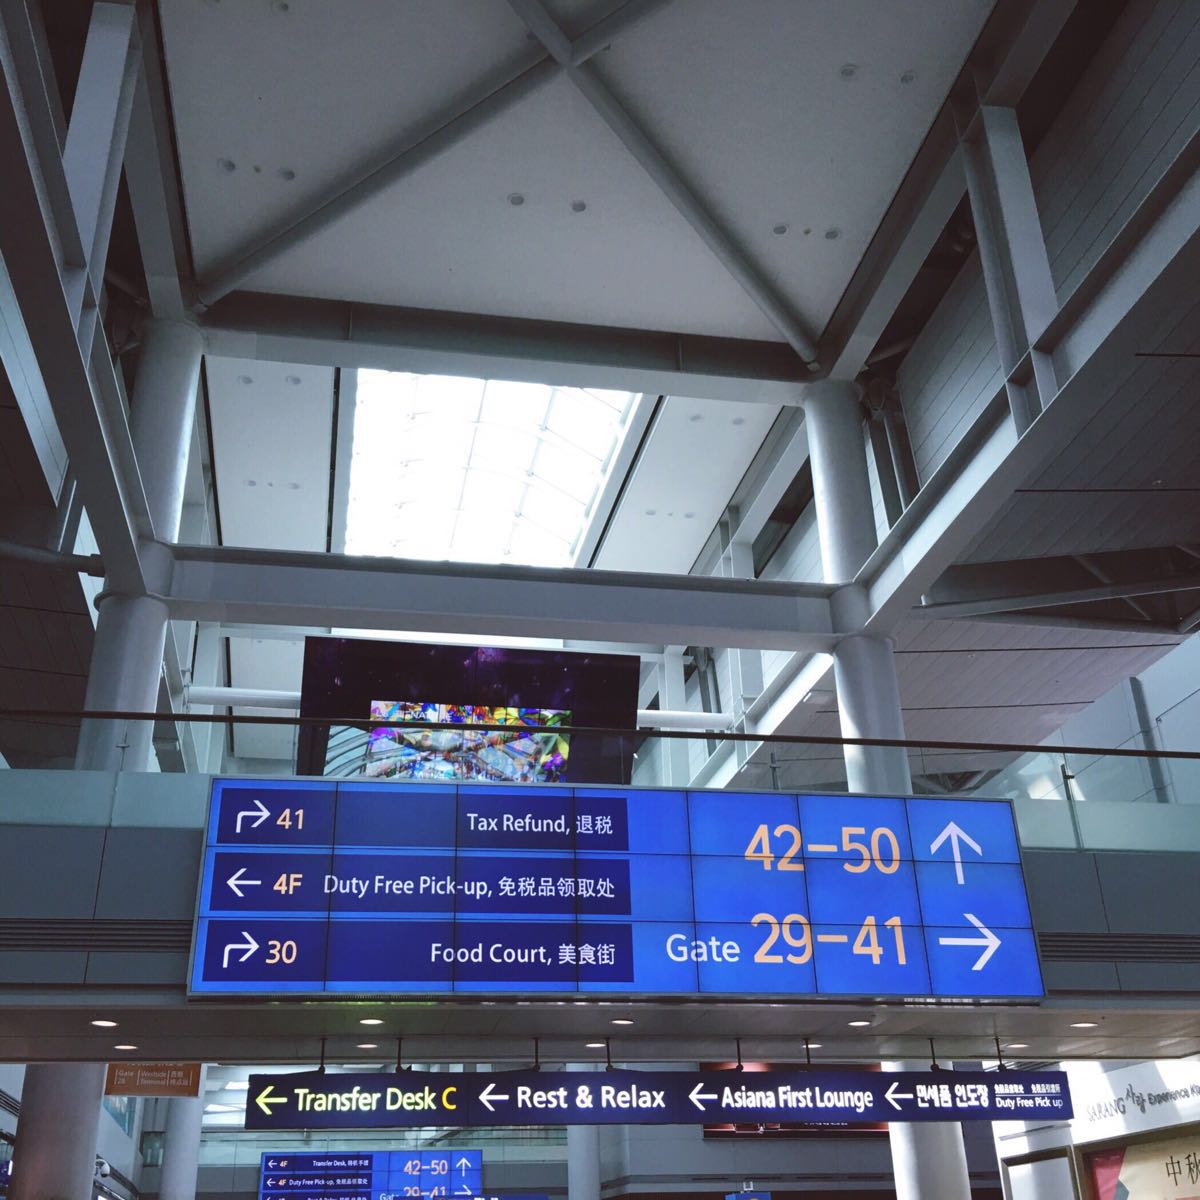 我记得合肥新桥机场有十几个登机口,深圳宝安机场有六十几个登机口,而